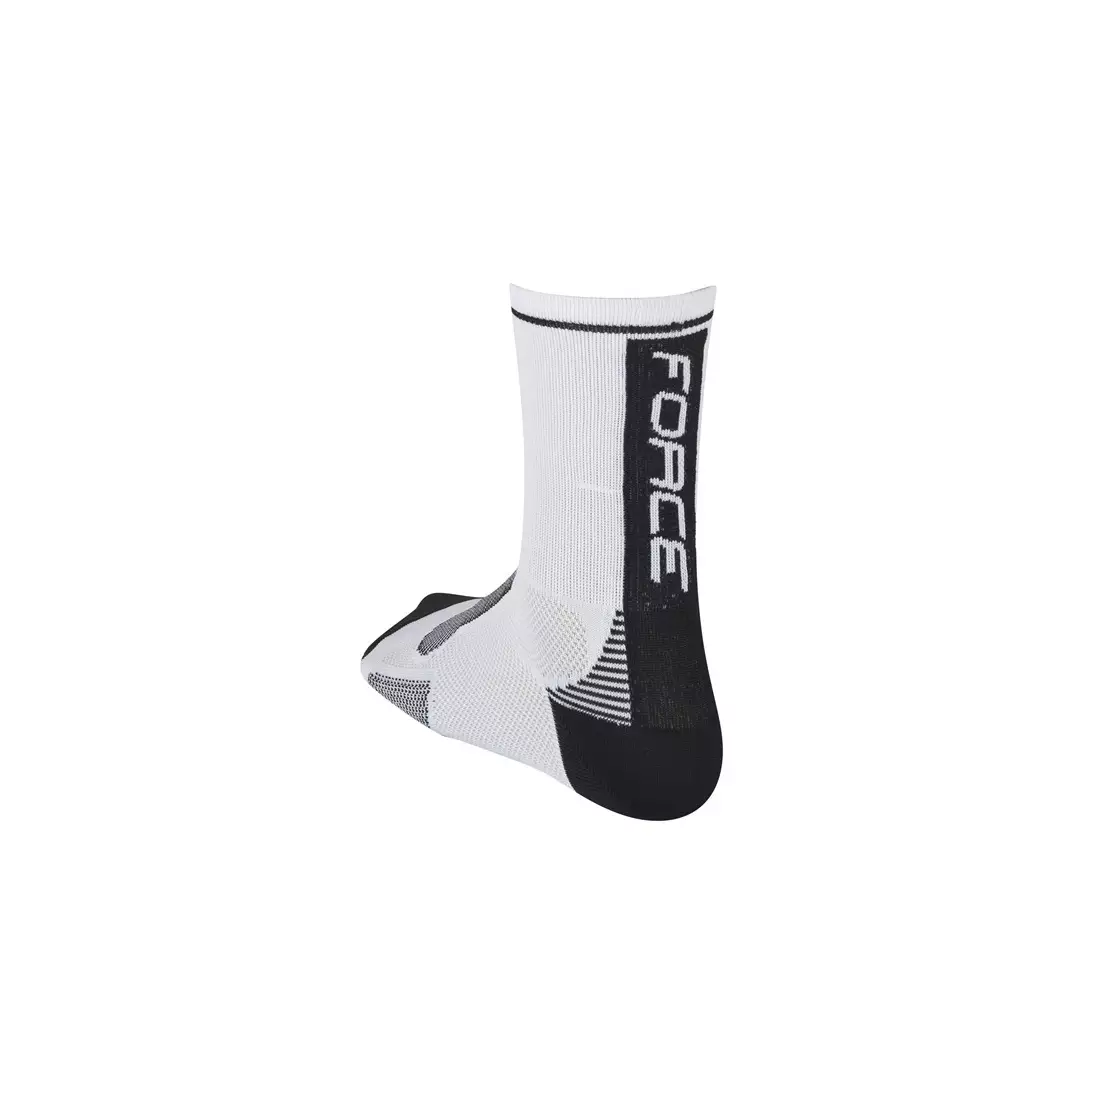 Sportovní ponožky FORCE LONG 900985/900995 - bílé a černé